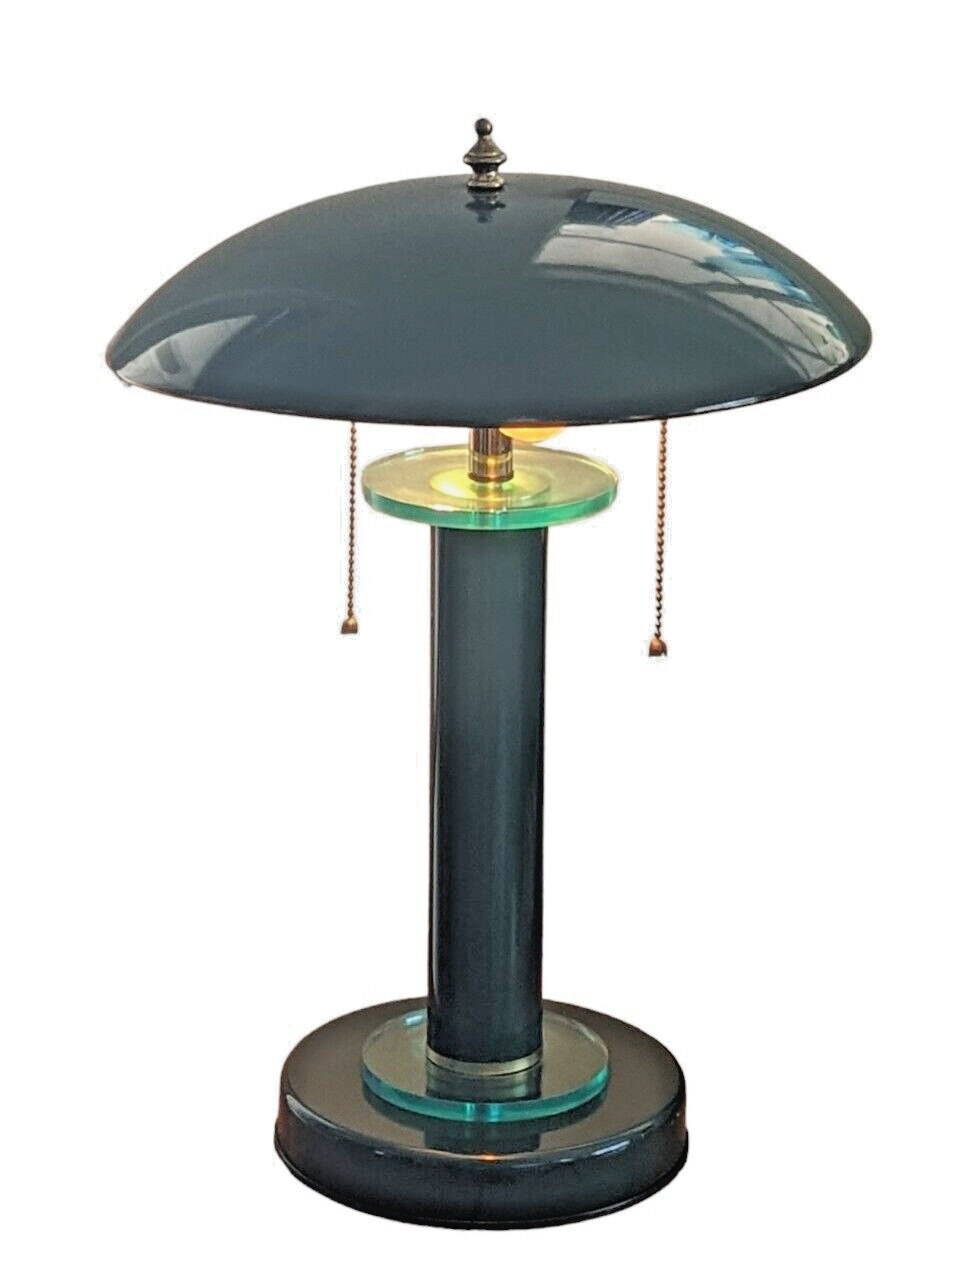 VTG Lamp 80s Art Deco Bankers Desk Retro Hunter Green Postmodern Memphis Style